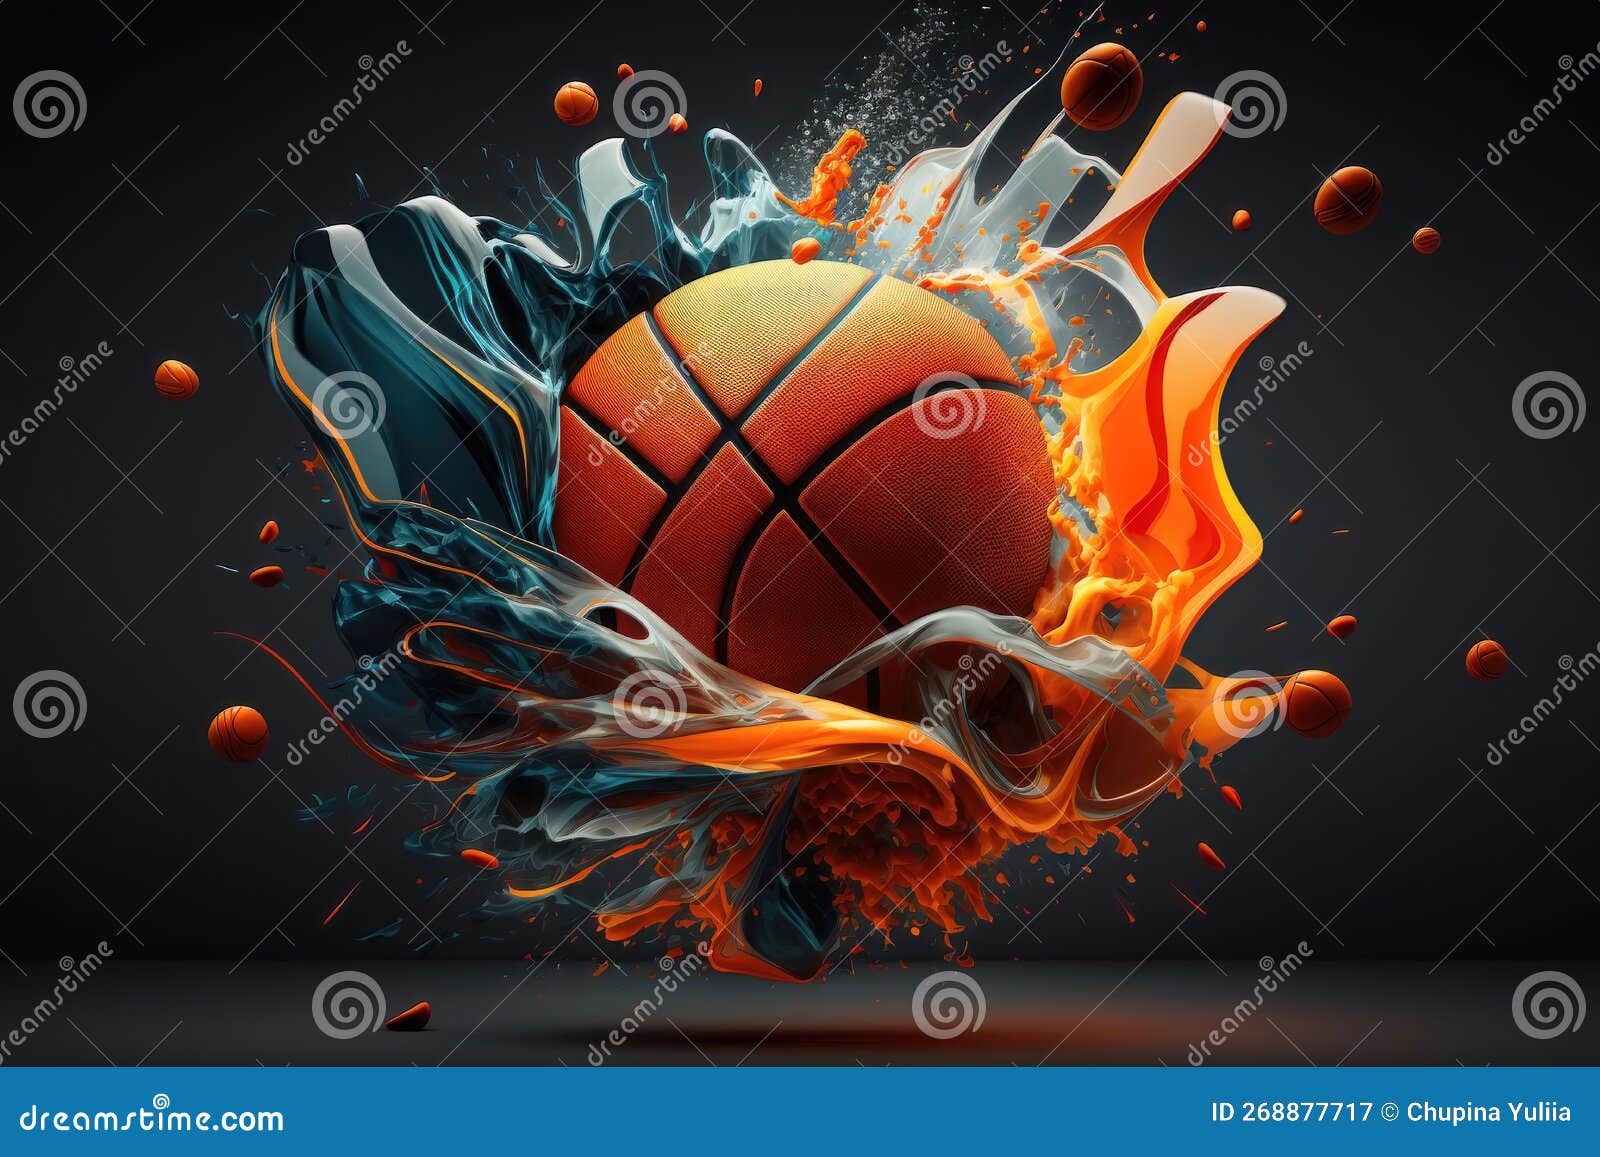 Ilustração de uma bola de basquete